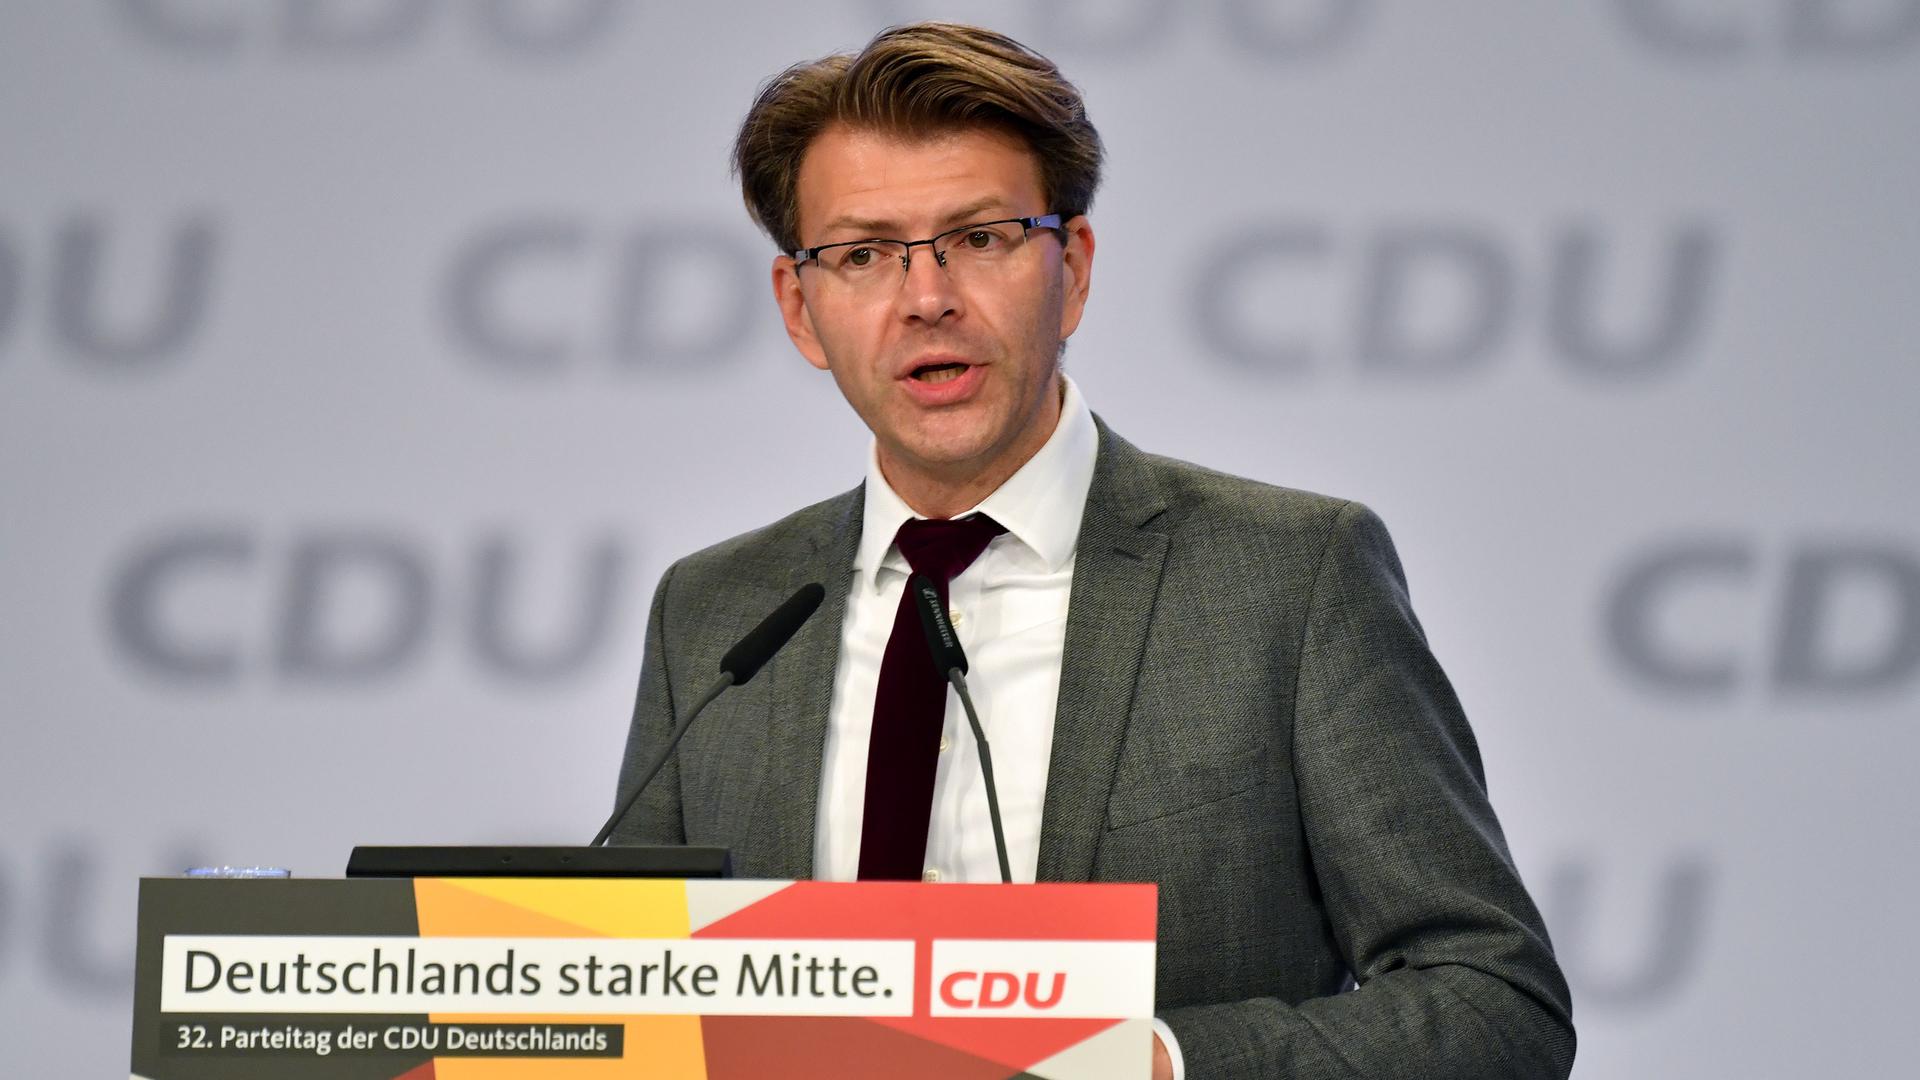 Wer regiert künftig das Land? Stabilität verspricht der stellvertretende  CDU-Landesvize Daniel Caspary, sollte es eine Neuauflage der grün-schwarzen Koalition im Stuttgarter Landtag geben. Aber auch Bündnis aus Grünen, SPD und FDP ist rechnerisch möglich.